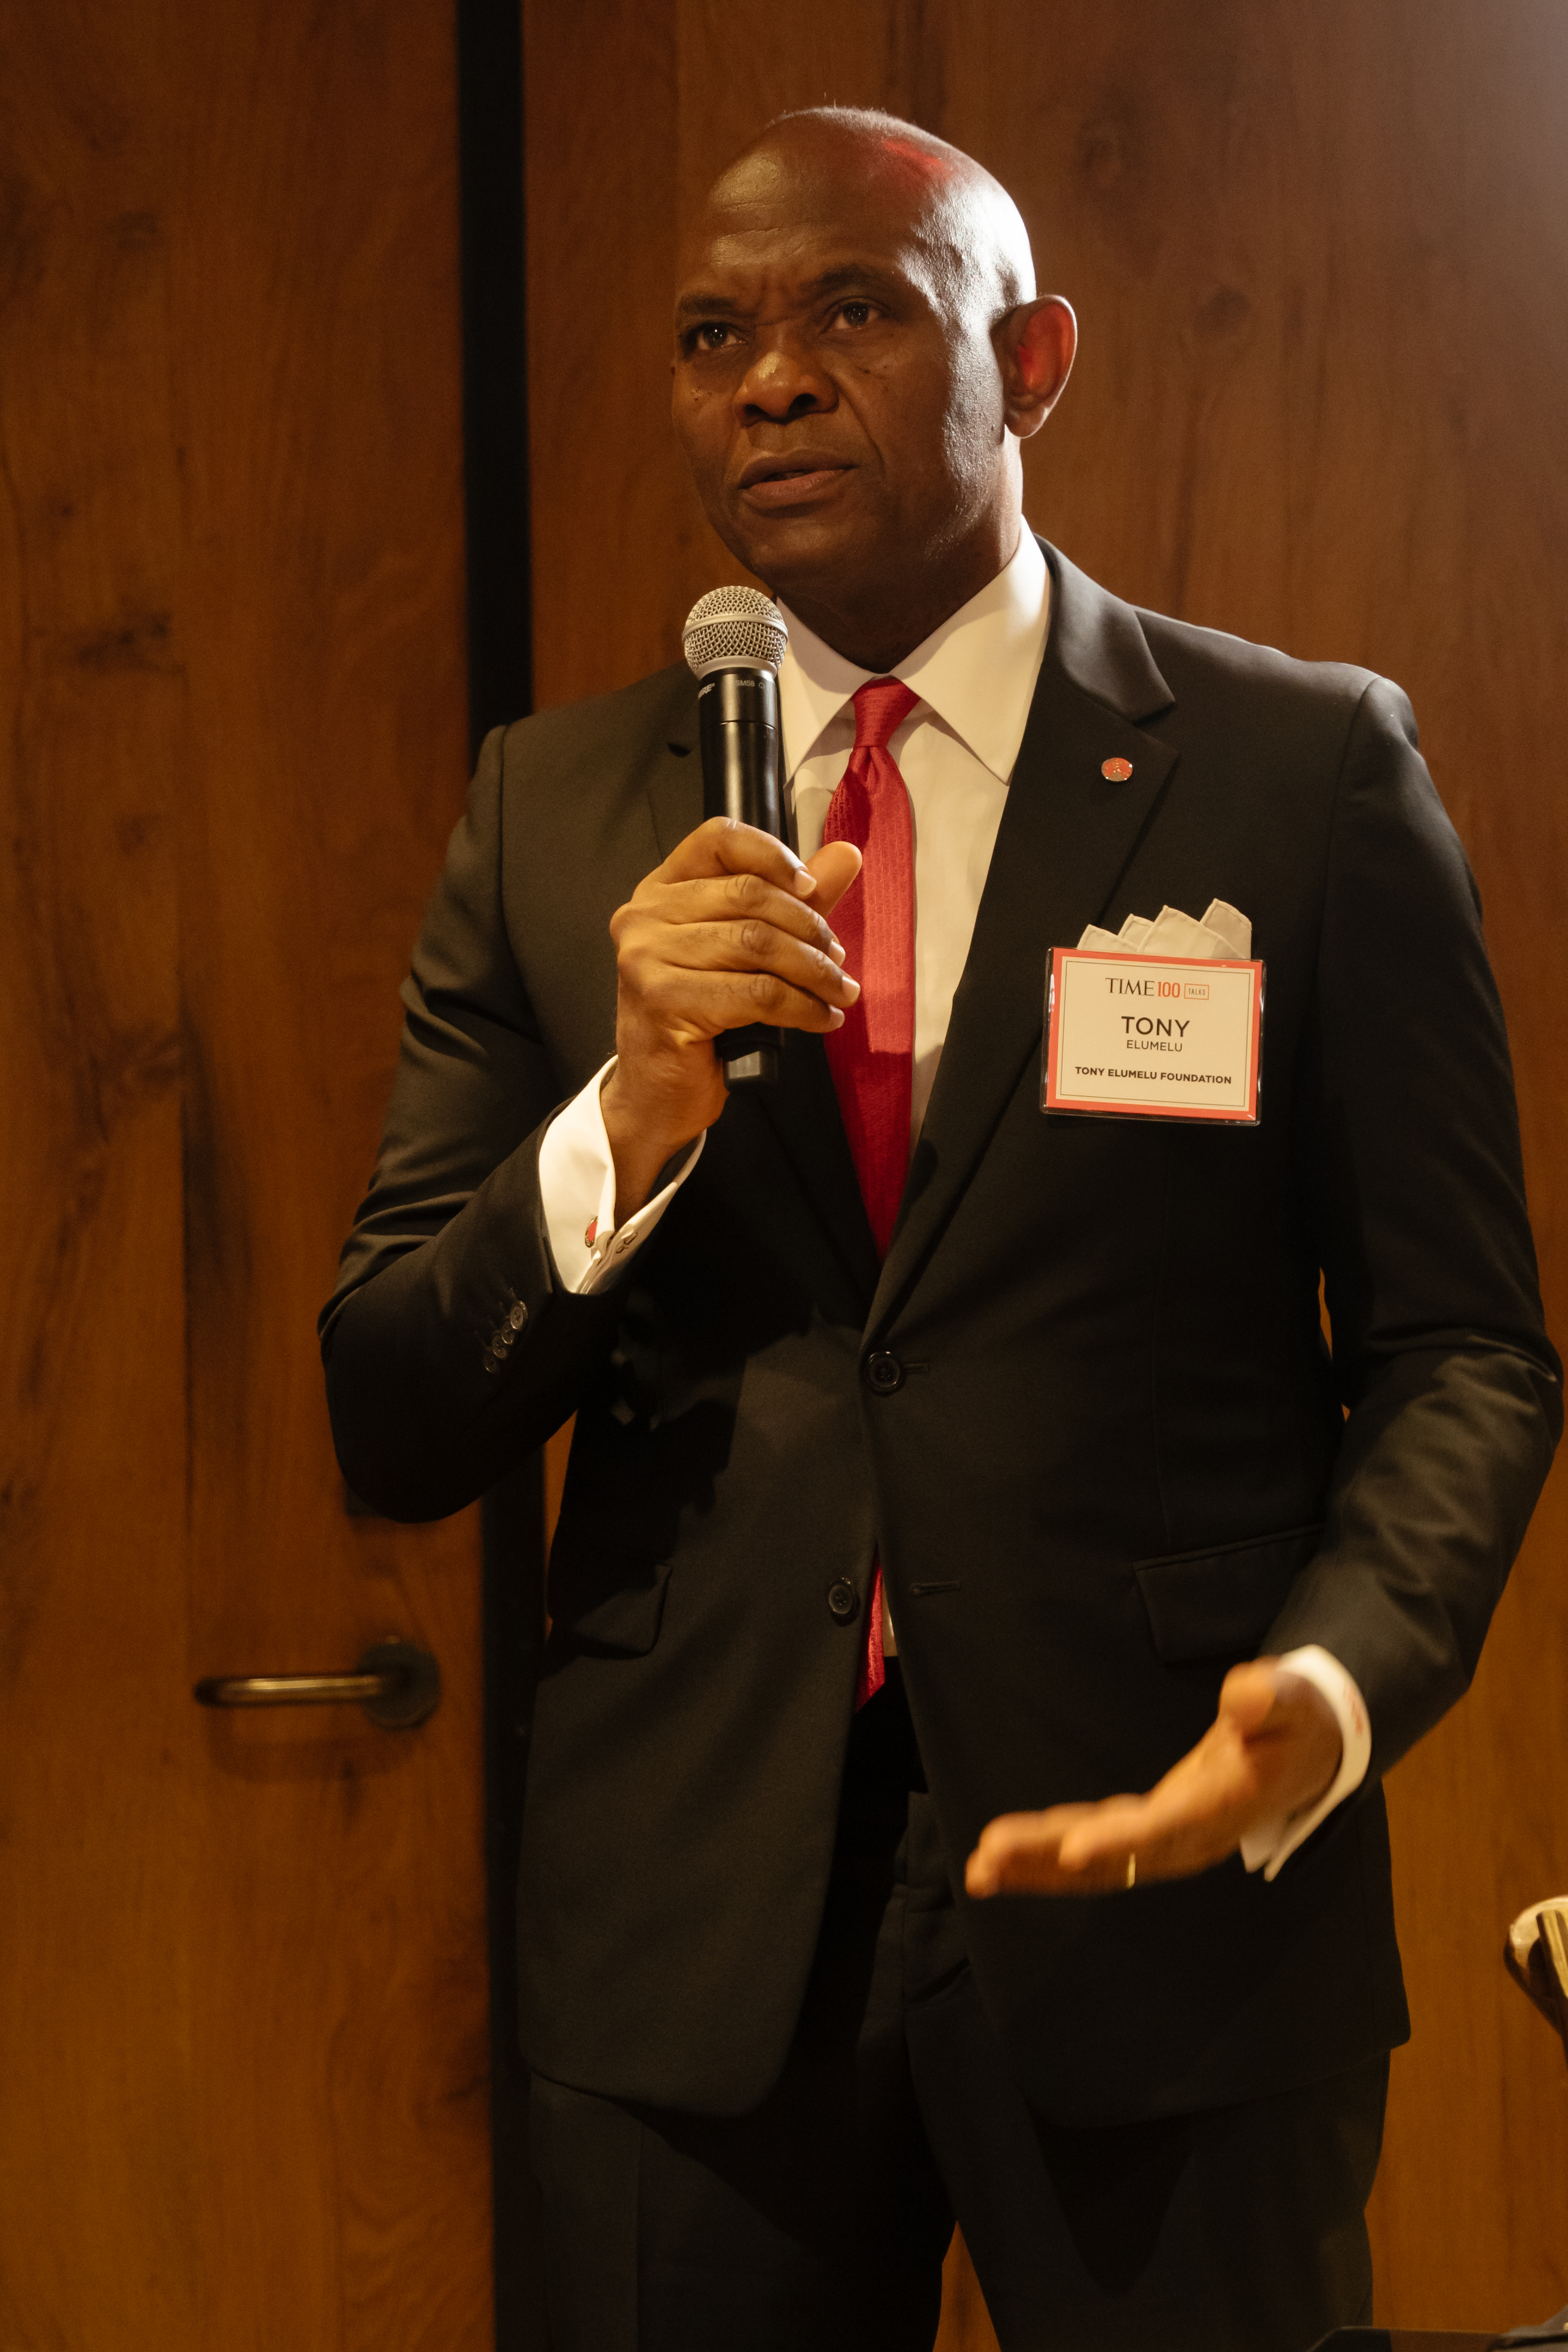 Founder of Tony Elumelu Foundation and Chairman of United Bank for Africa Tony Elumelu